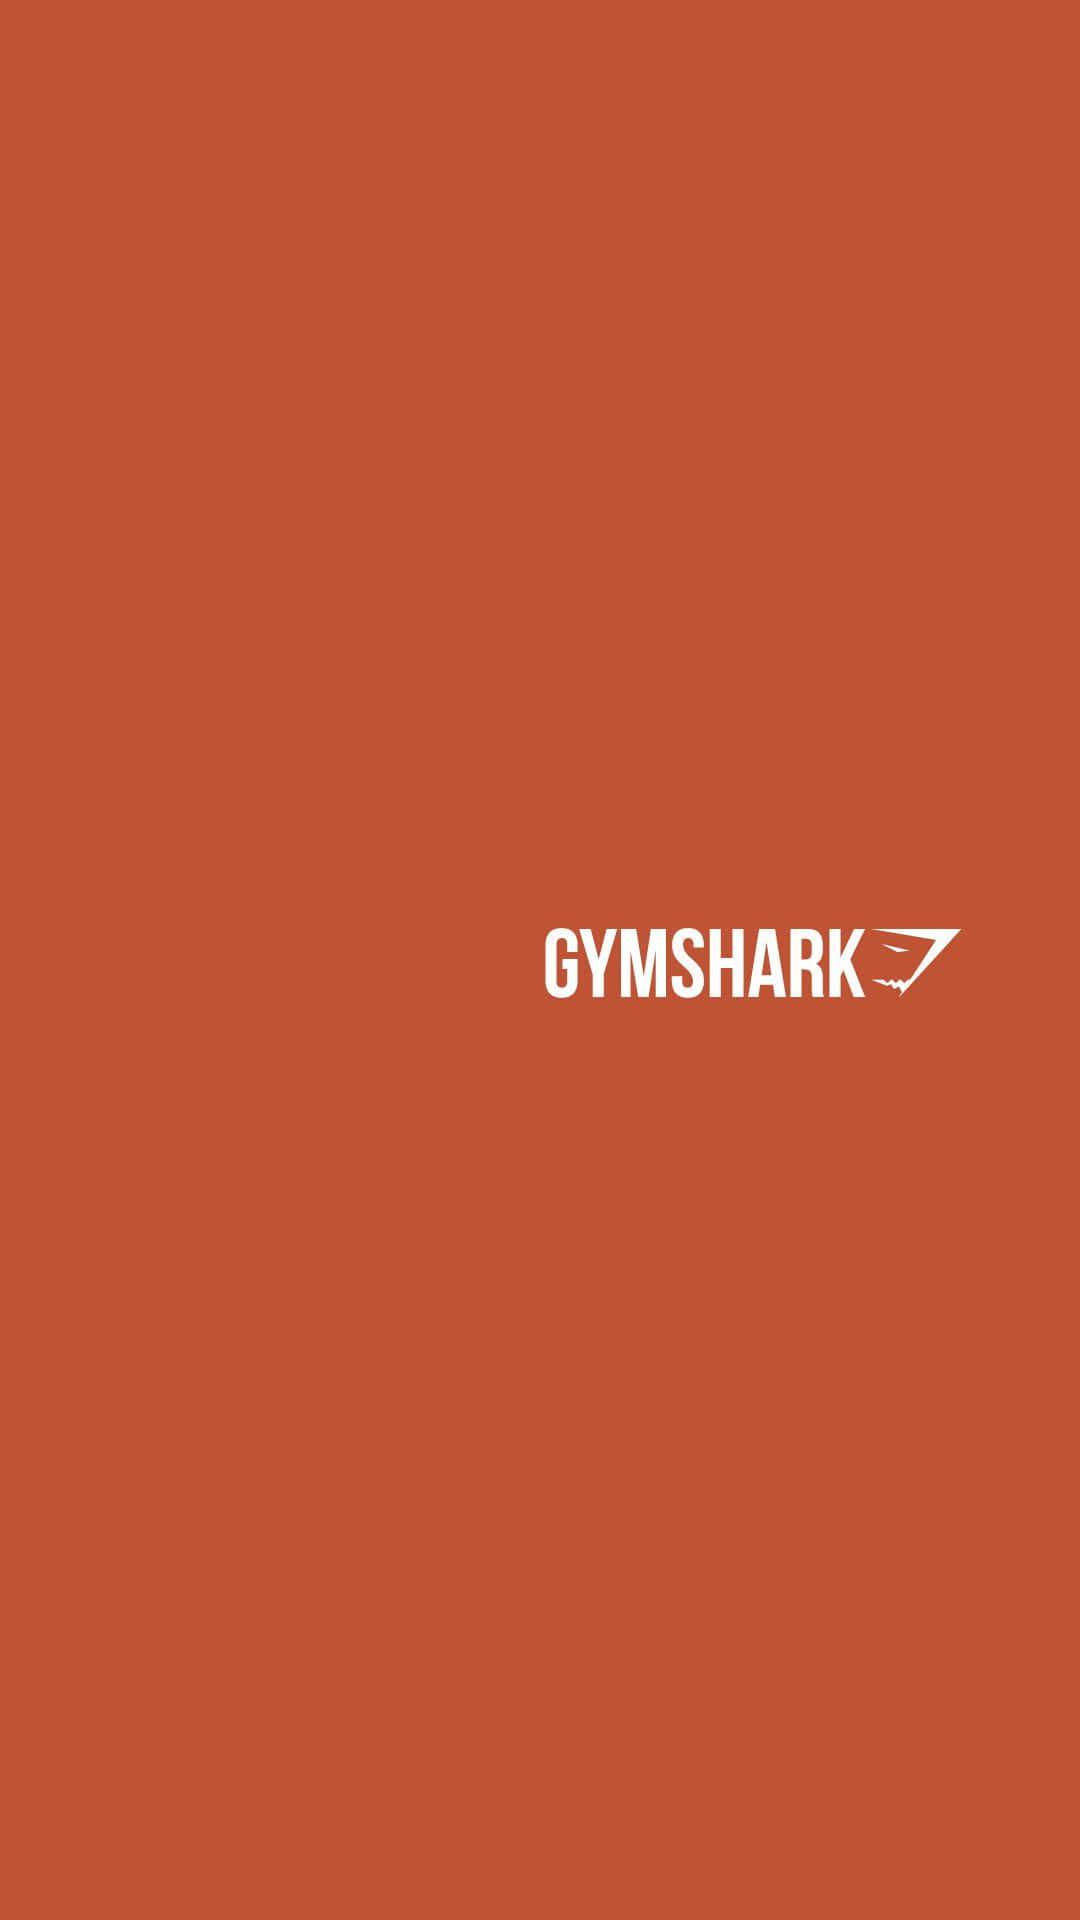 Burnt Orange Gymshark Logo Background Wallpaper